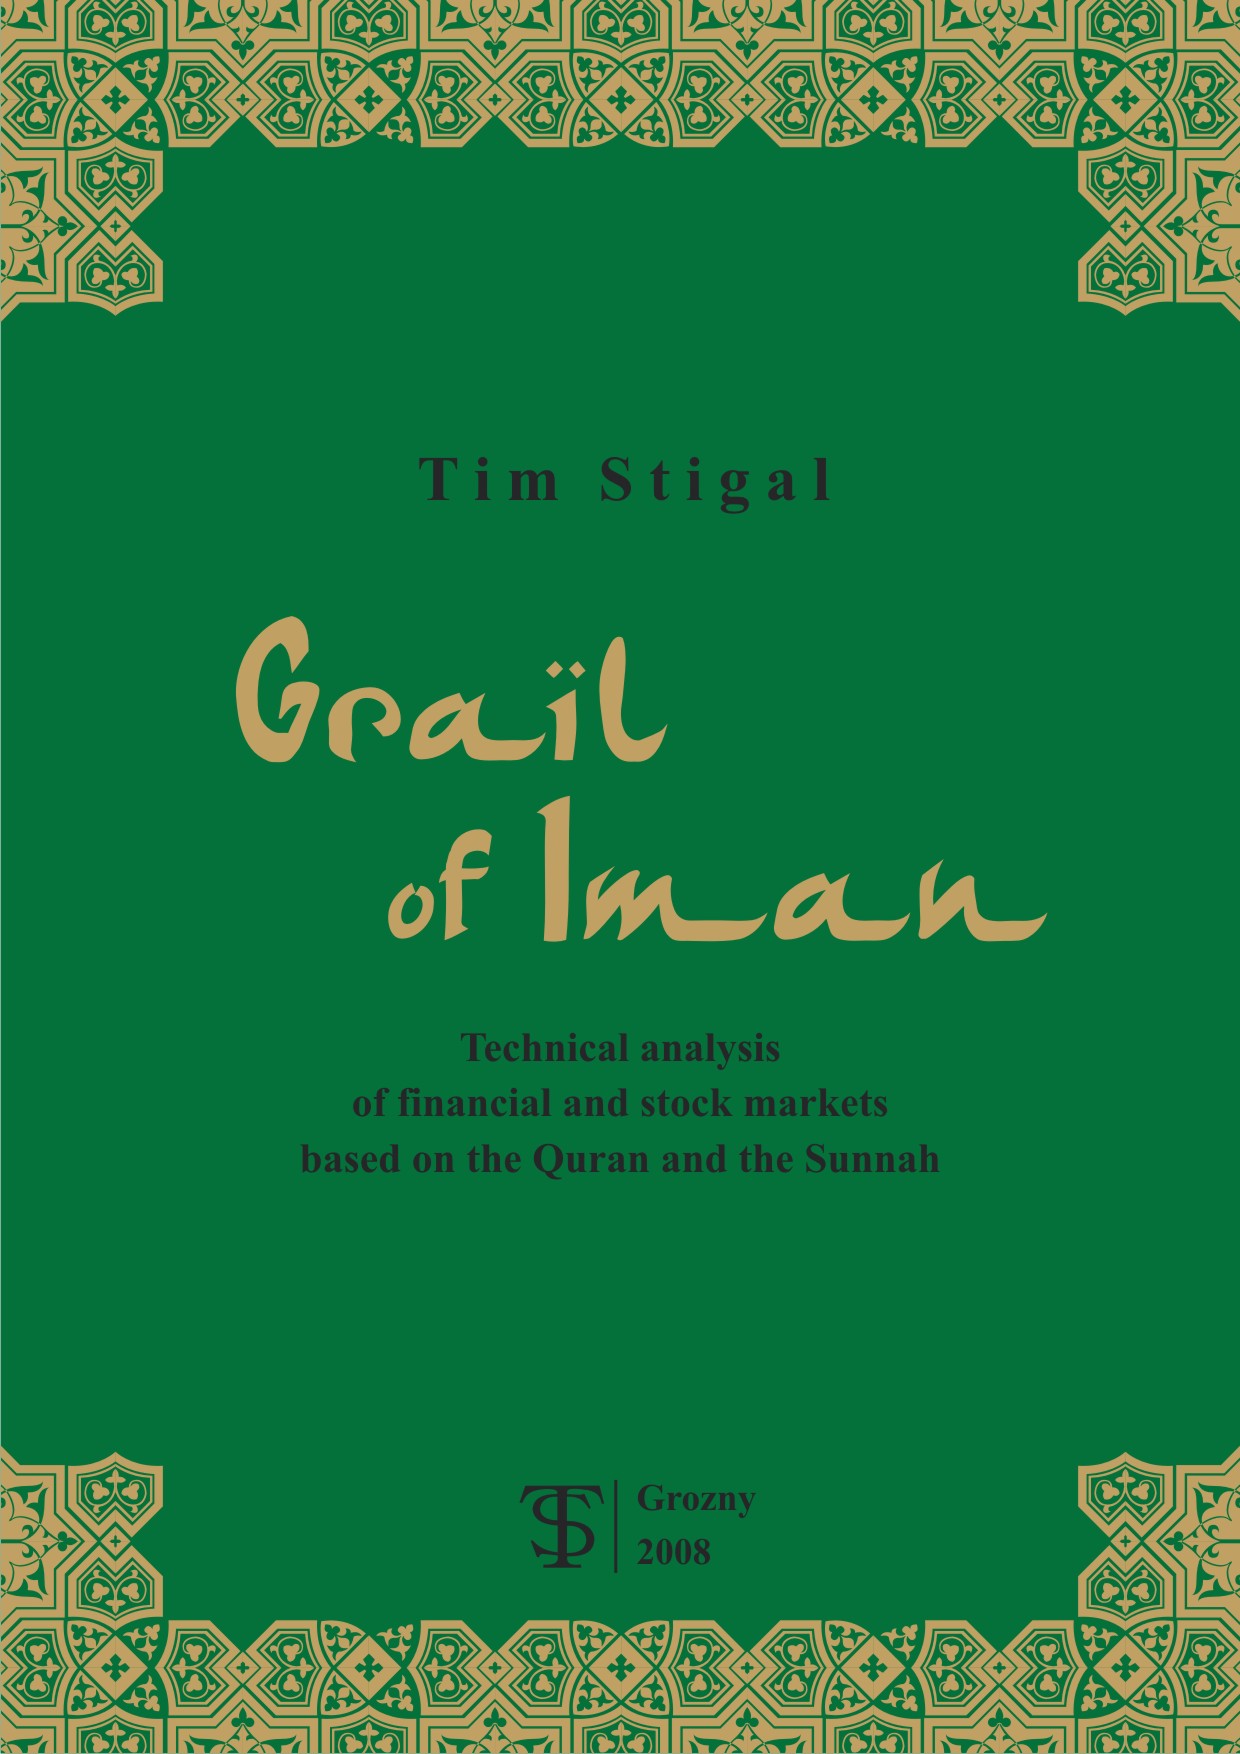 Grail of Iman